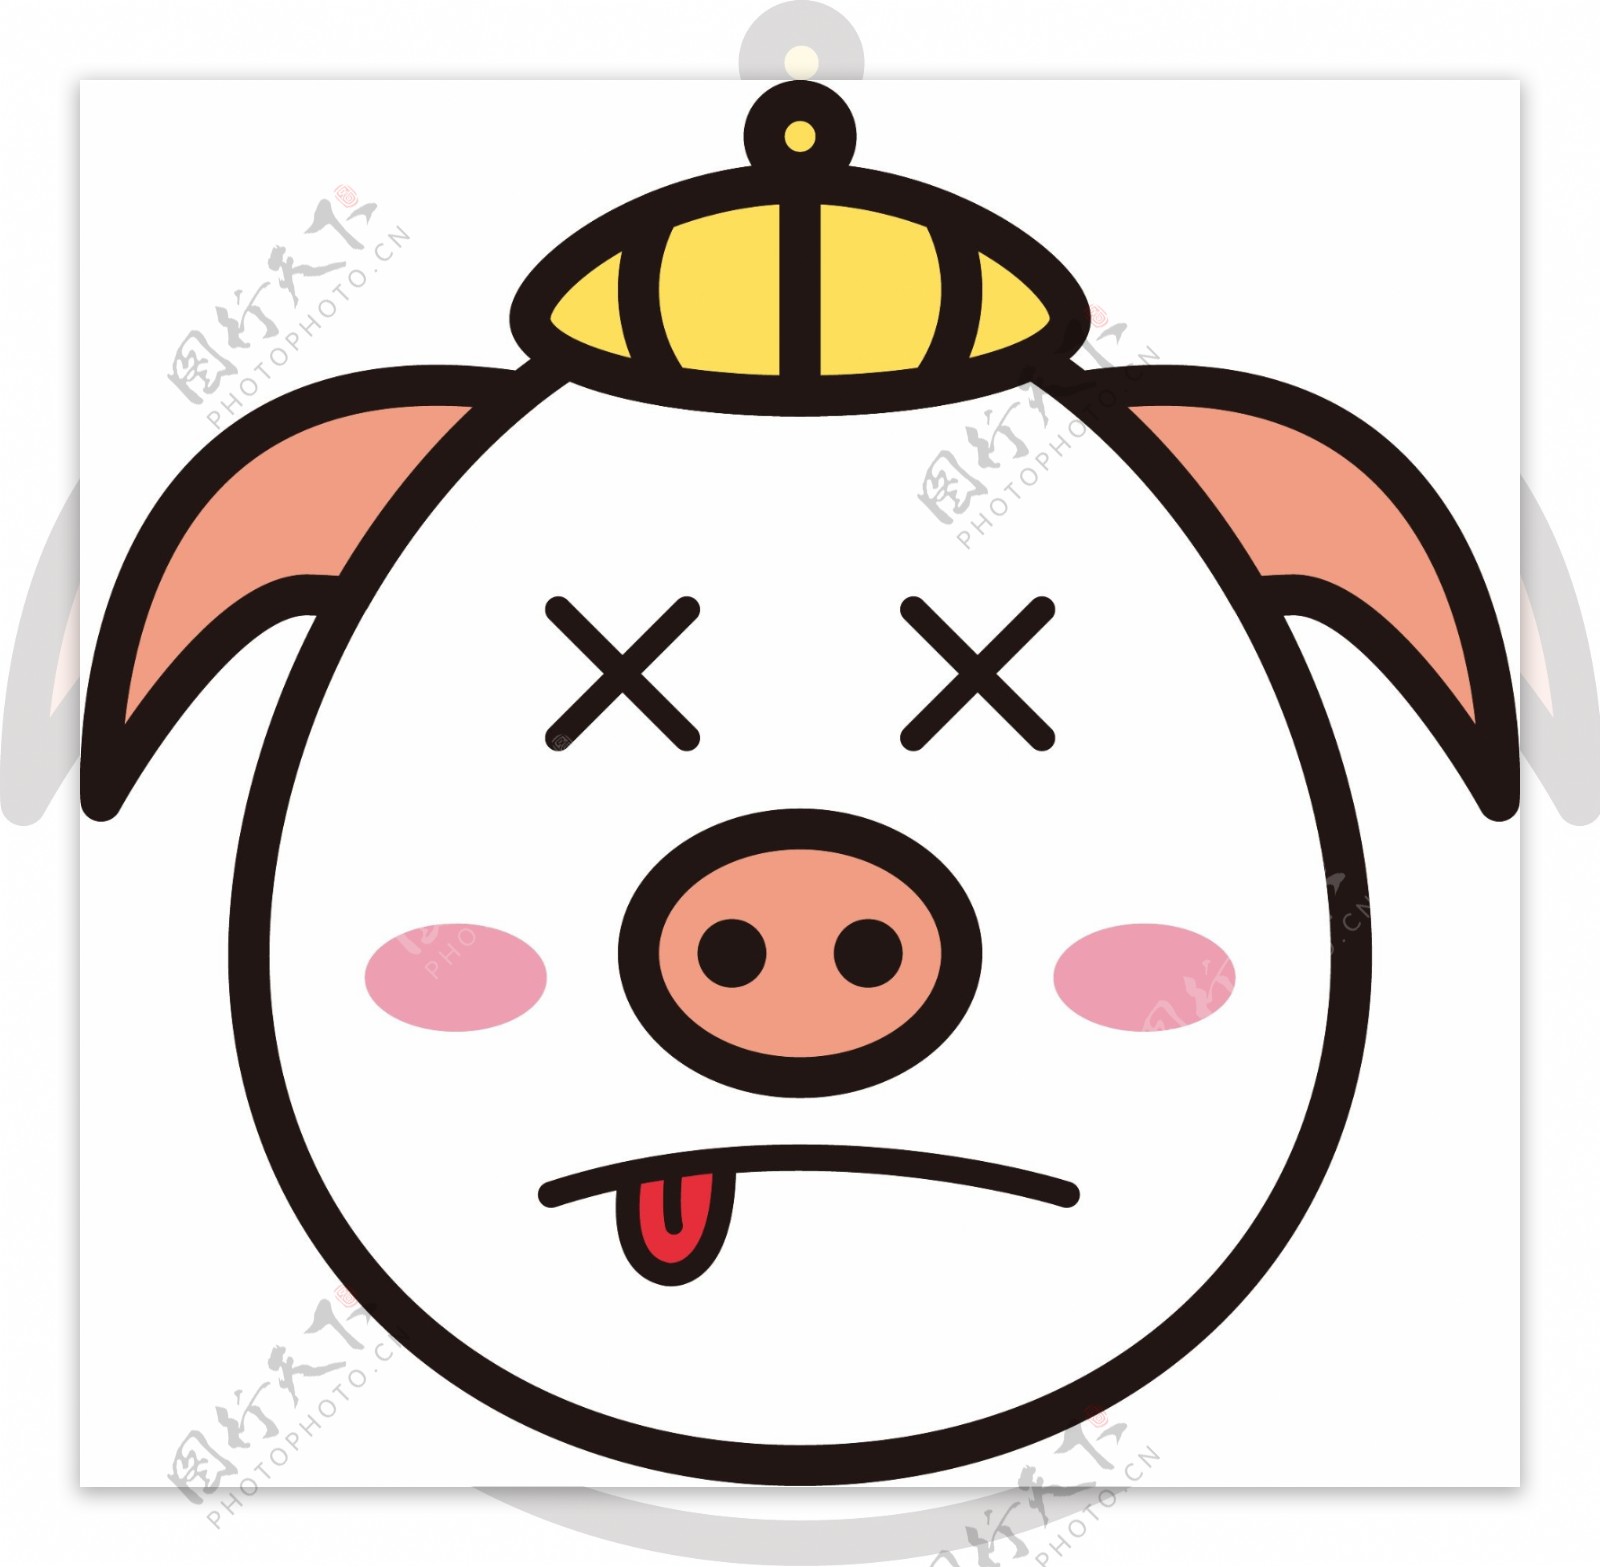 猪晕表情包卡通可爱生肖猪可商用元素